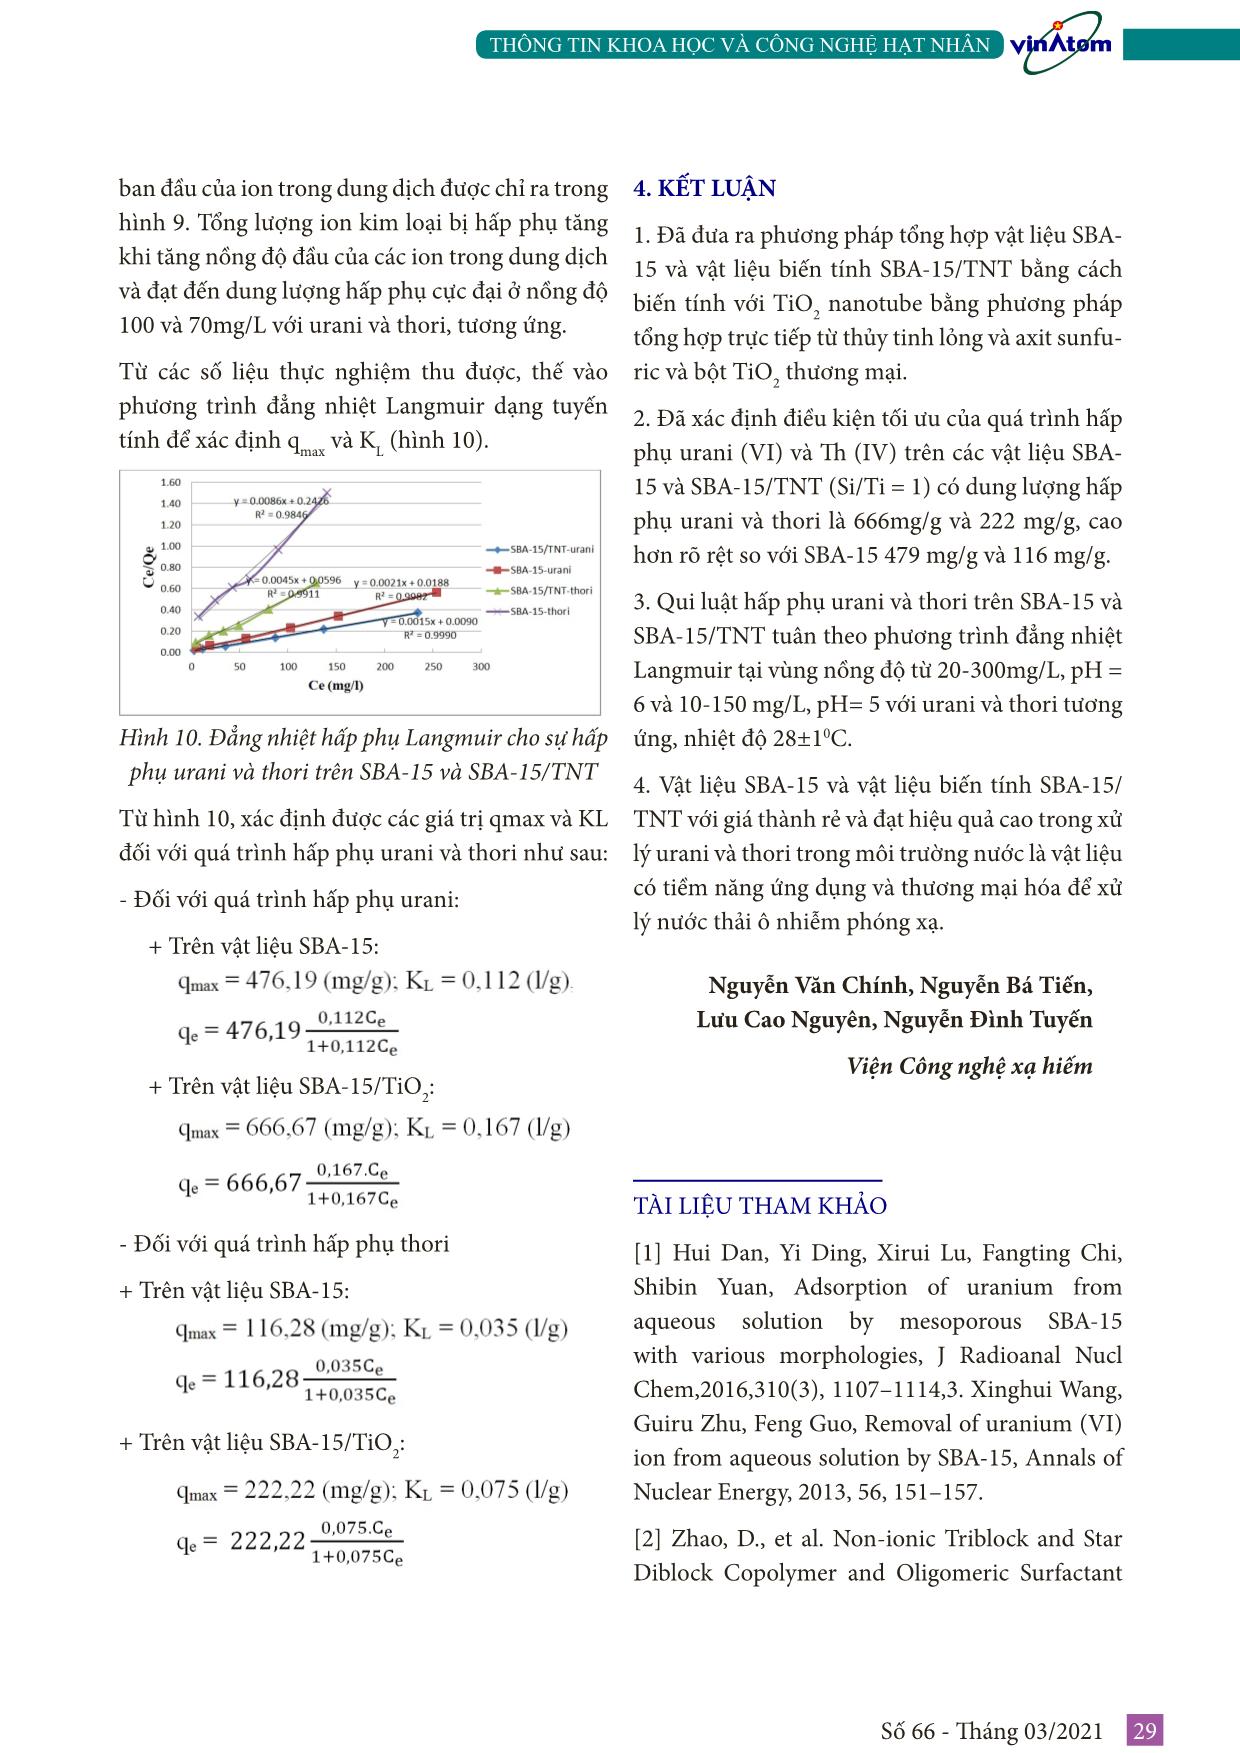 Tổng hợp và ứng dụng vật liệu SBA-15 và composite SBA-15/TiO₂ nanotube từ thủy tinh lỏng Việt Nam để loại bỏ urani(VI) và thori(IV) khỏi dung dịch trang 7